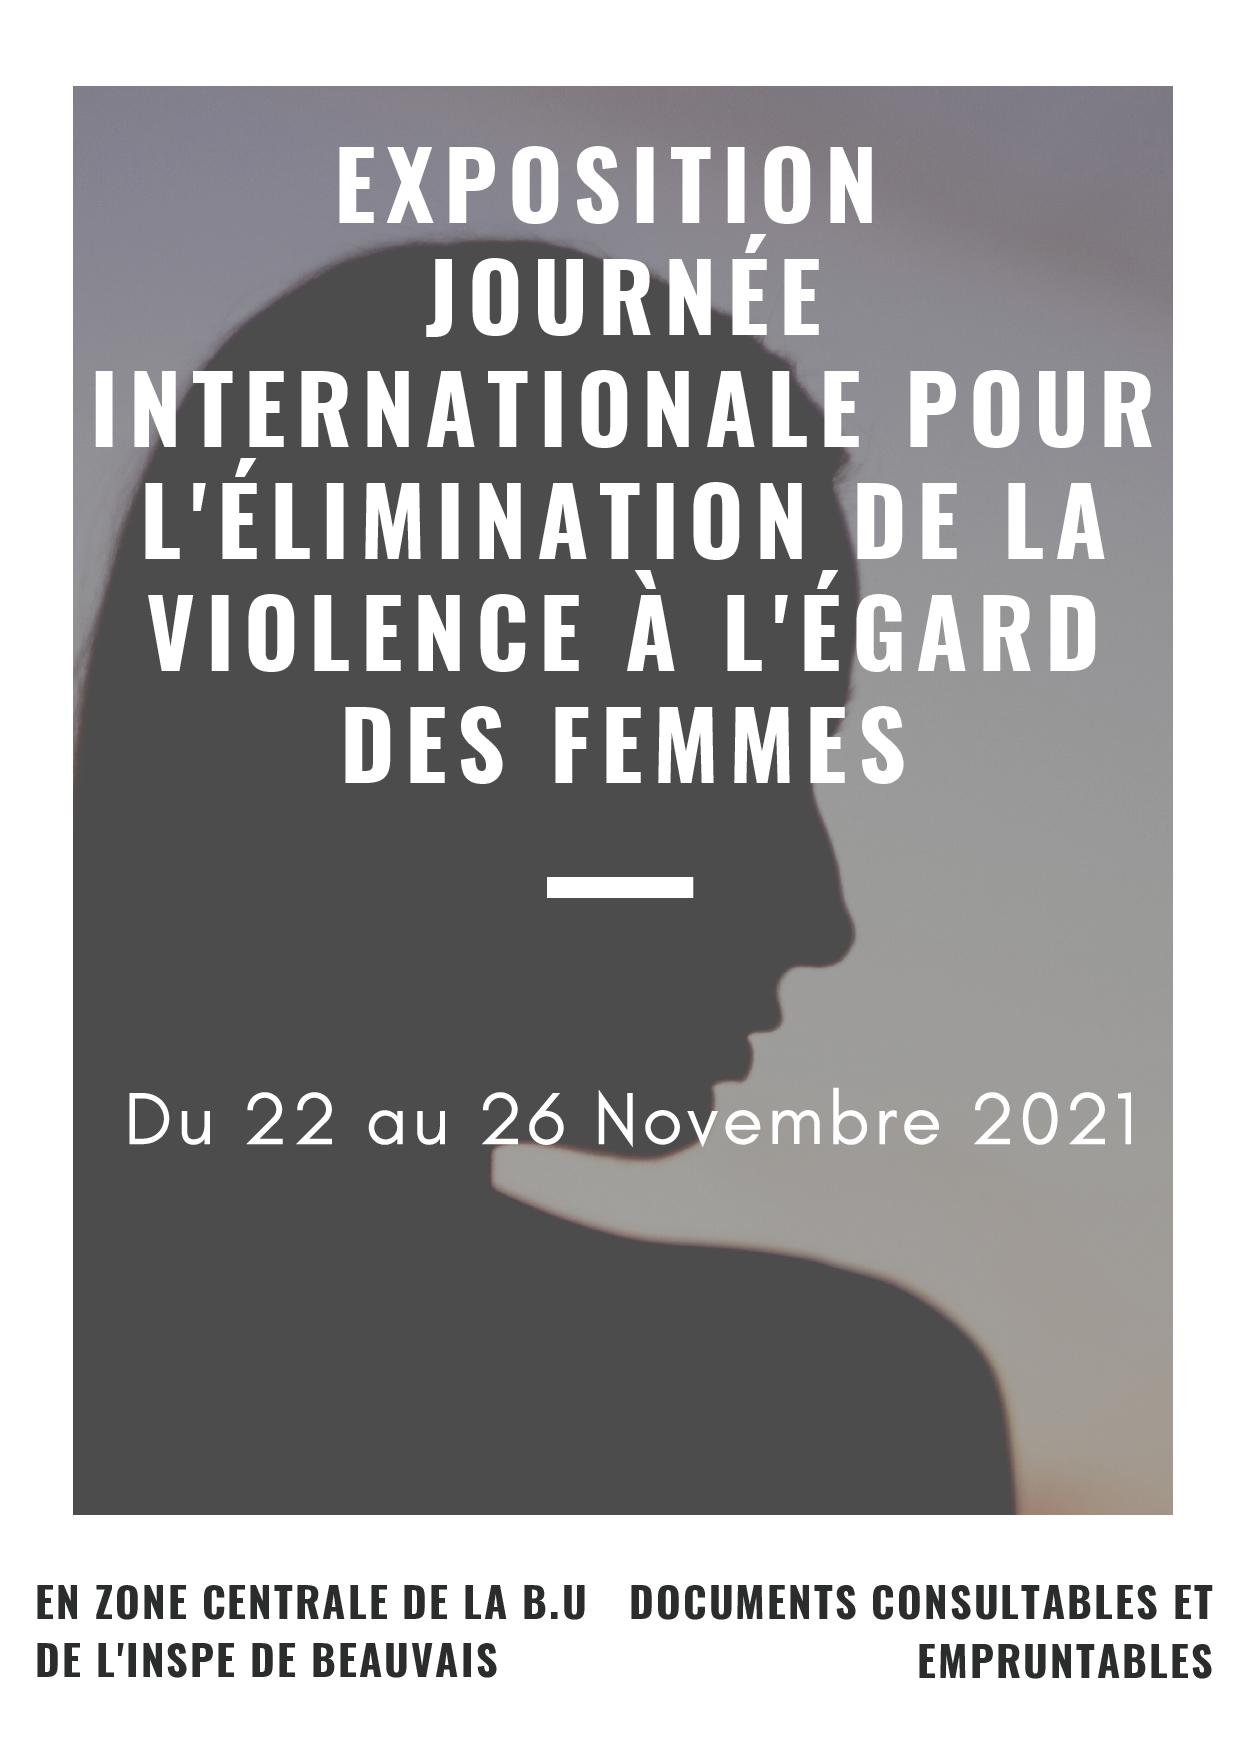 BU INSPE de Beauvais : exposition d'ouvrages sur la thématique "contre la violence à l'égard des femmes"